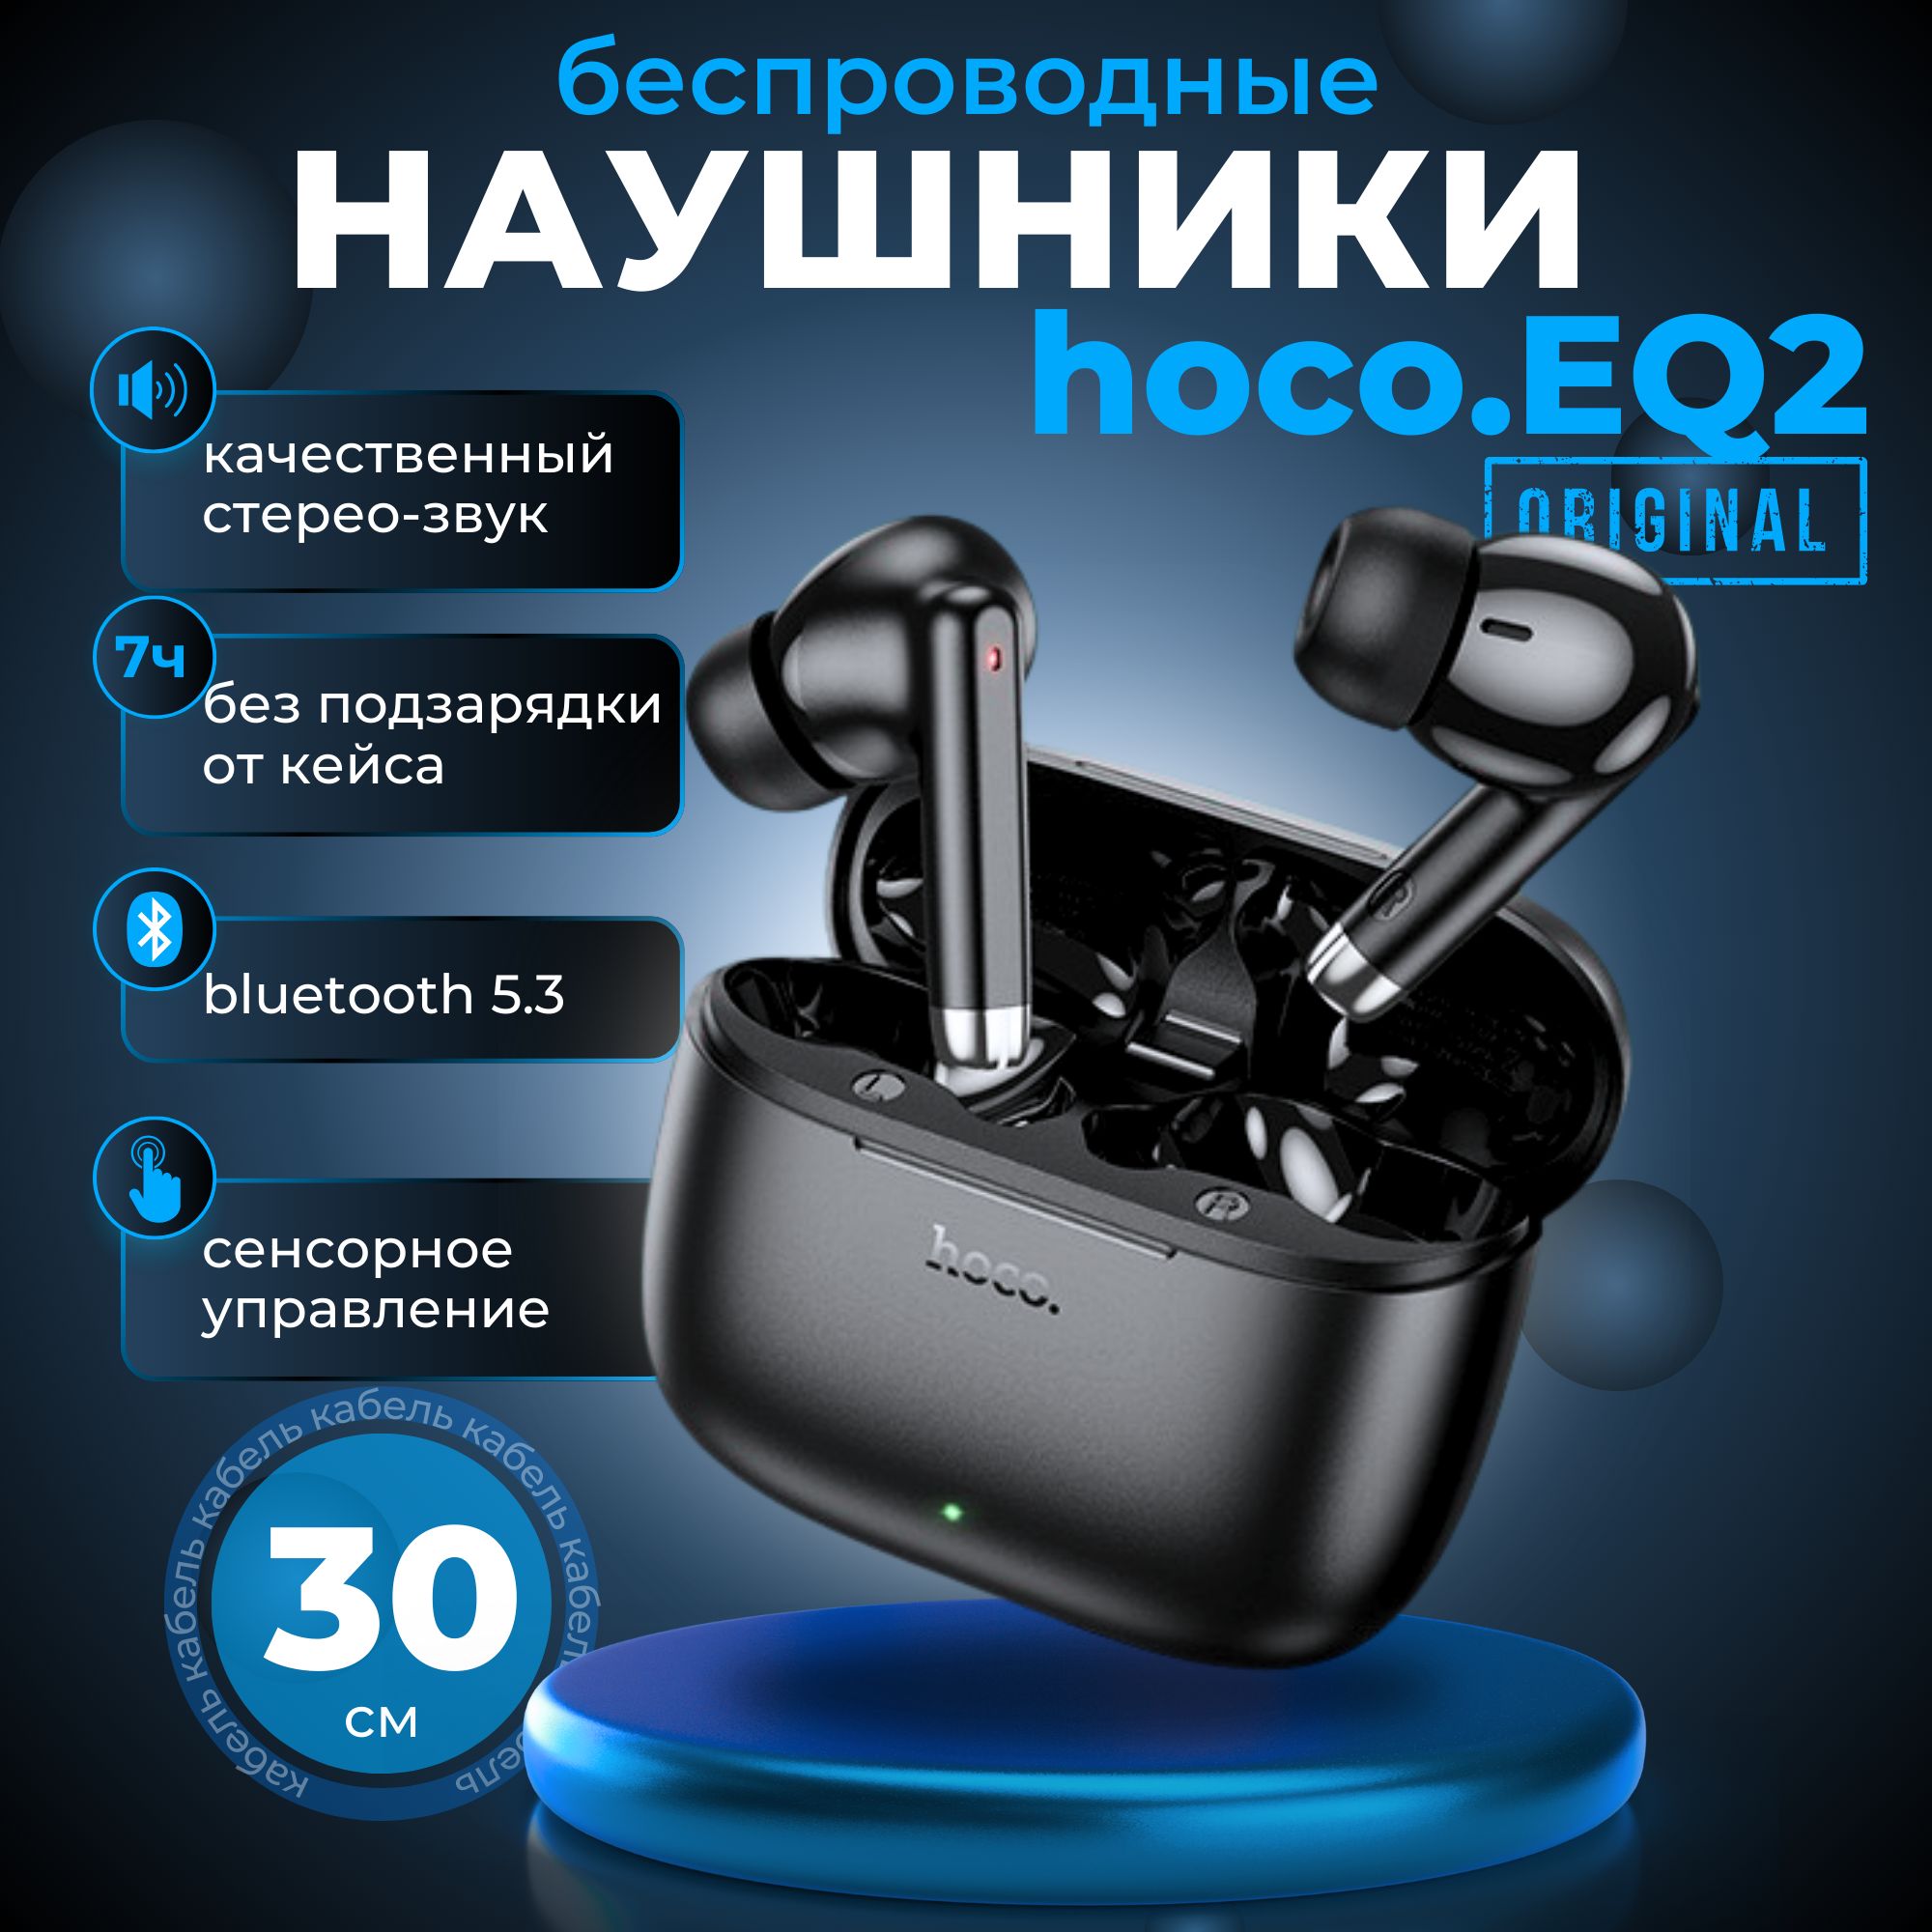 hocoНаушникибеспроводныесмикрофономHocoEQ2,Bluetooth,черный